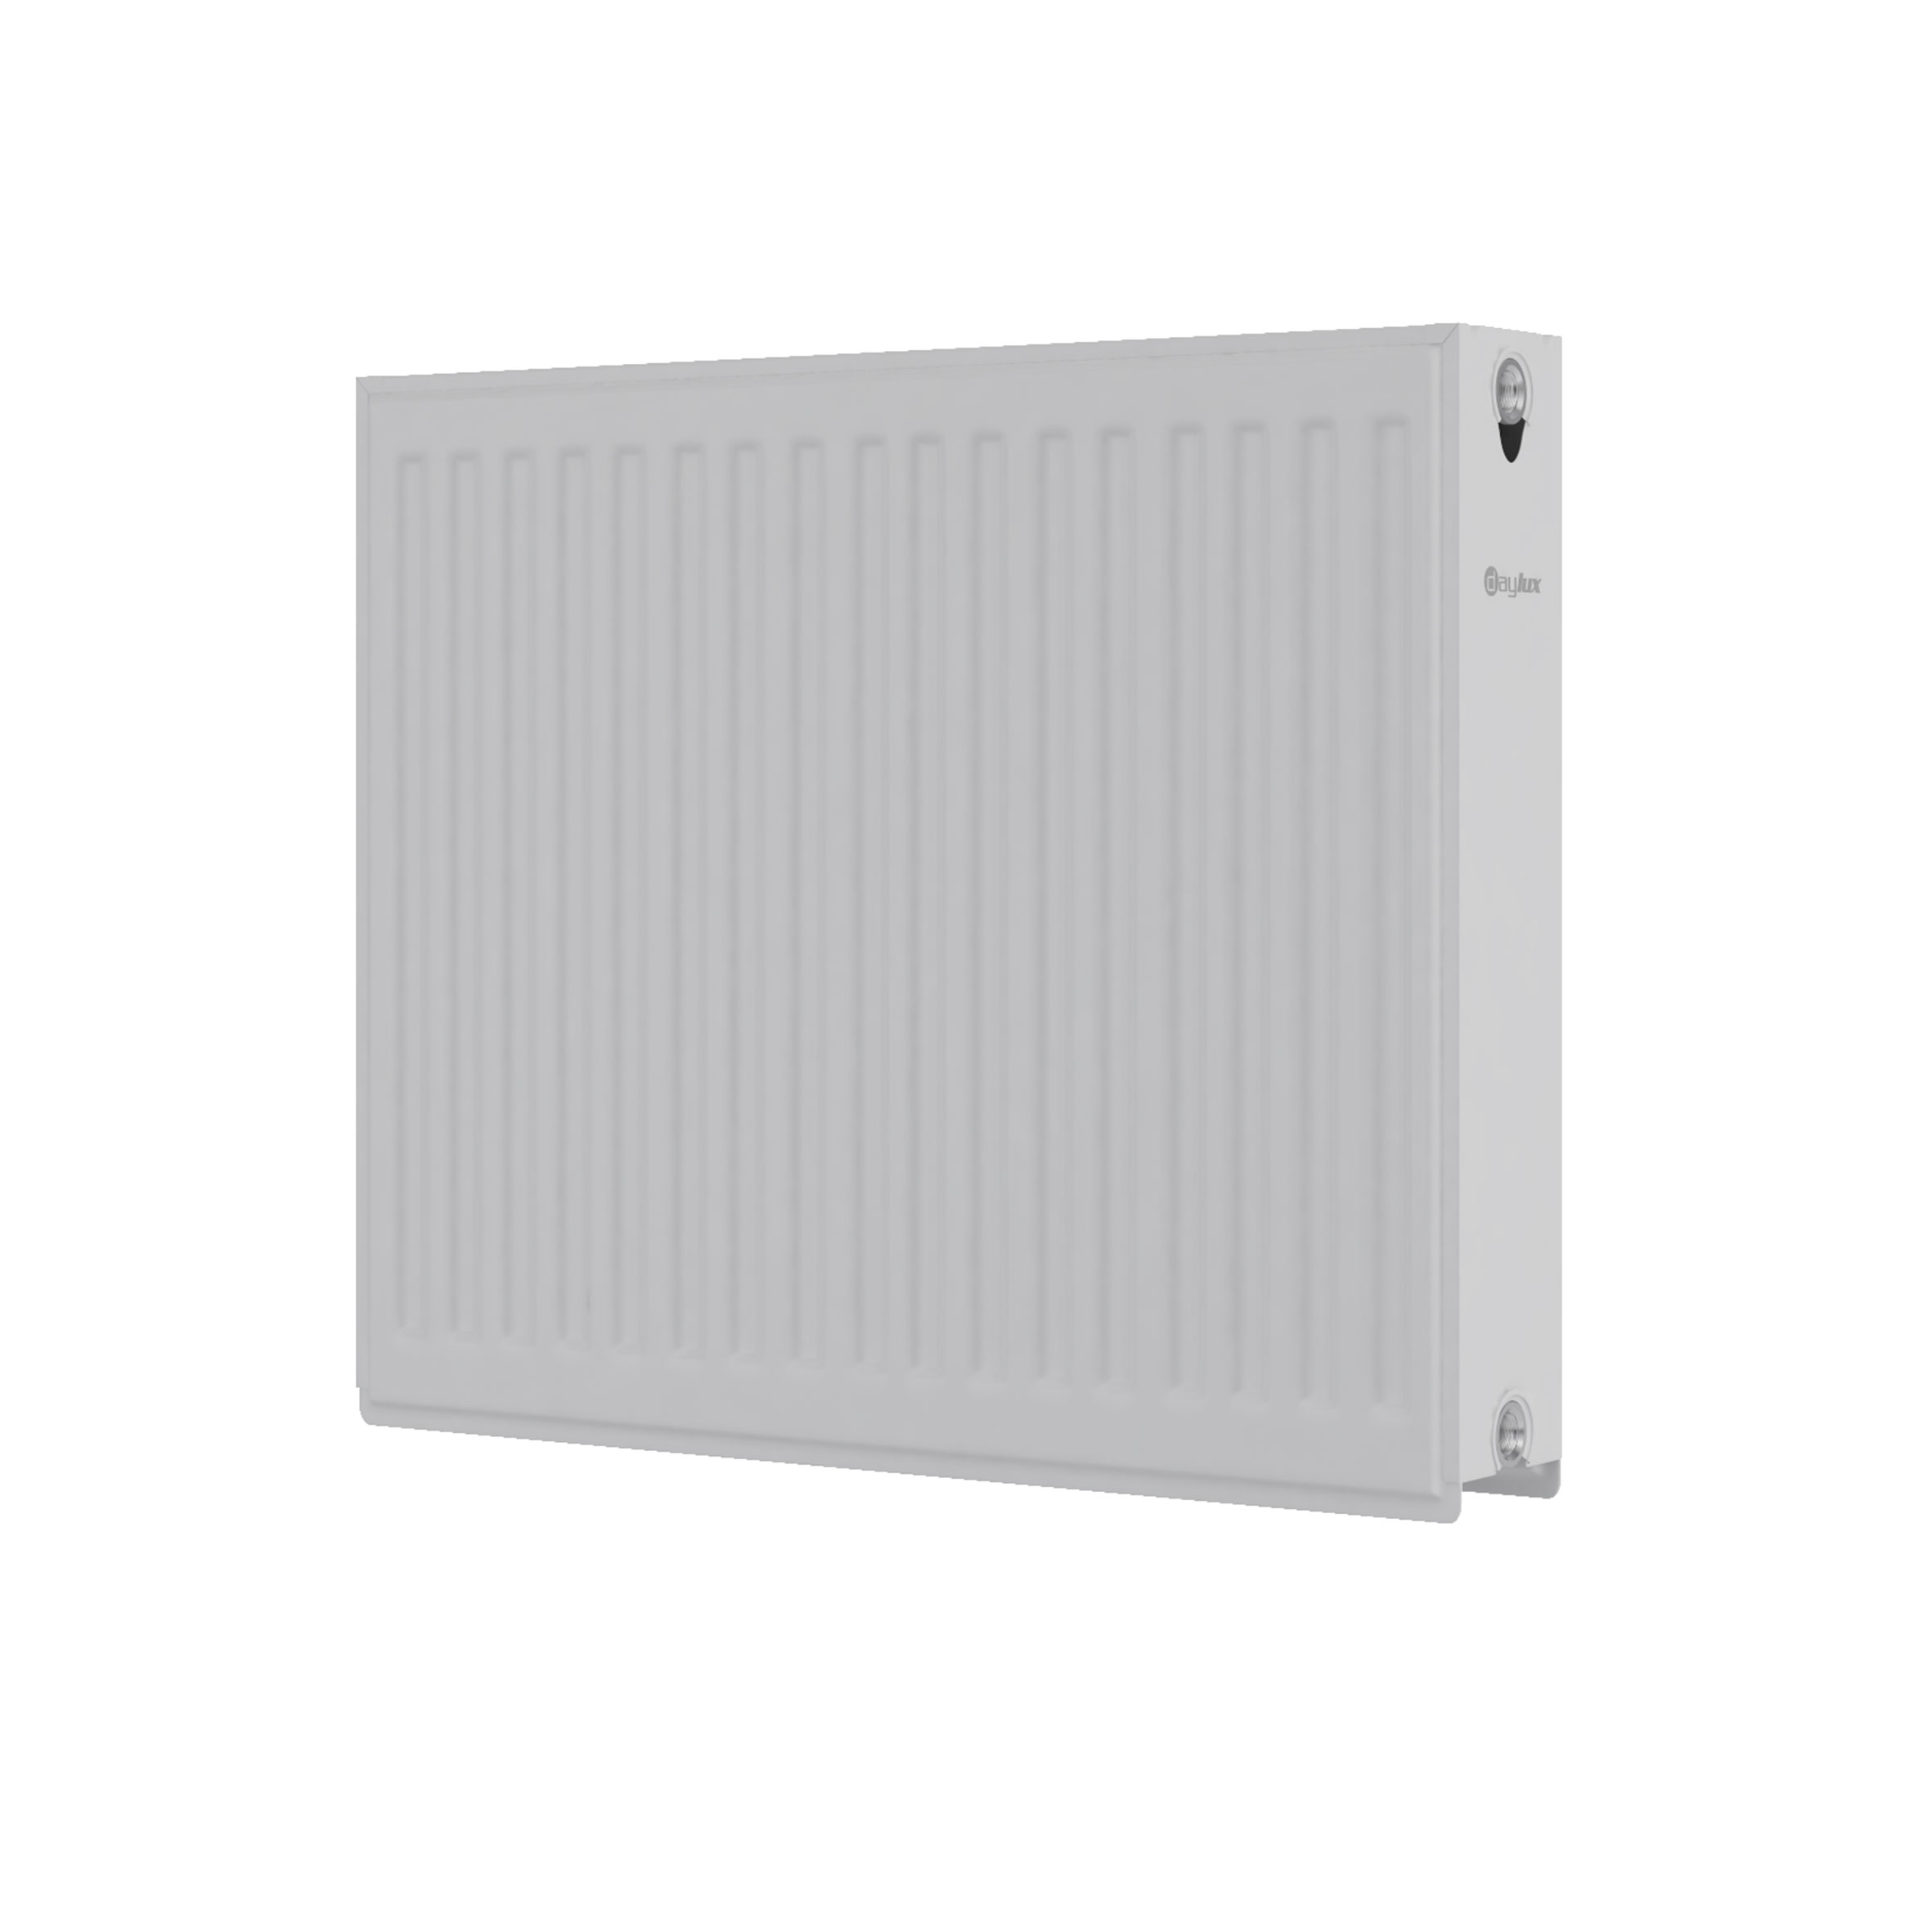 Радиатор для отопления Daylux 22 600x500 (боковое подключение) цена 1368.00 грн - фотография 2